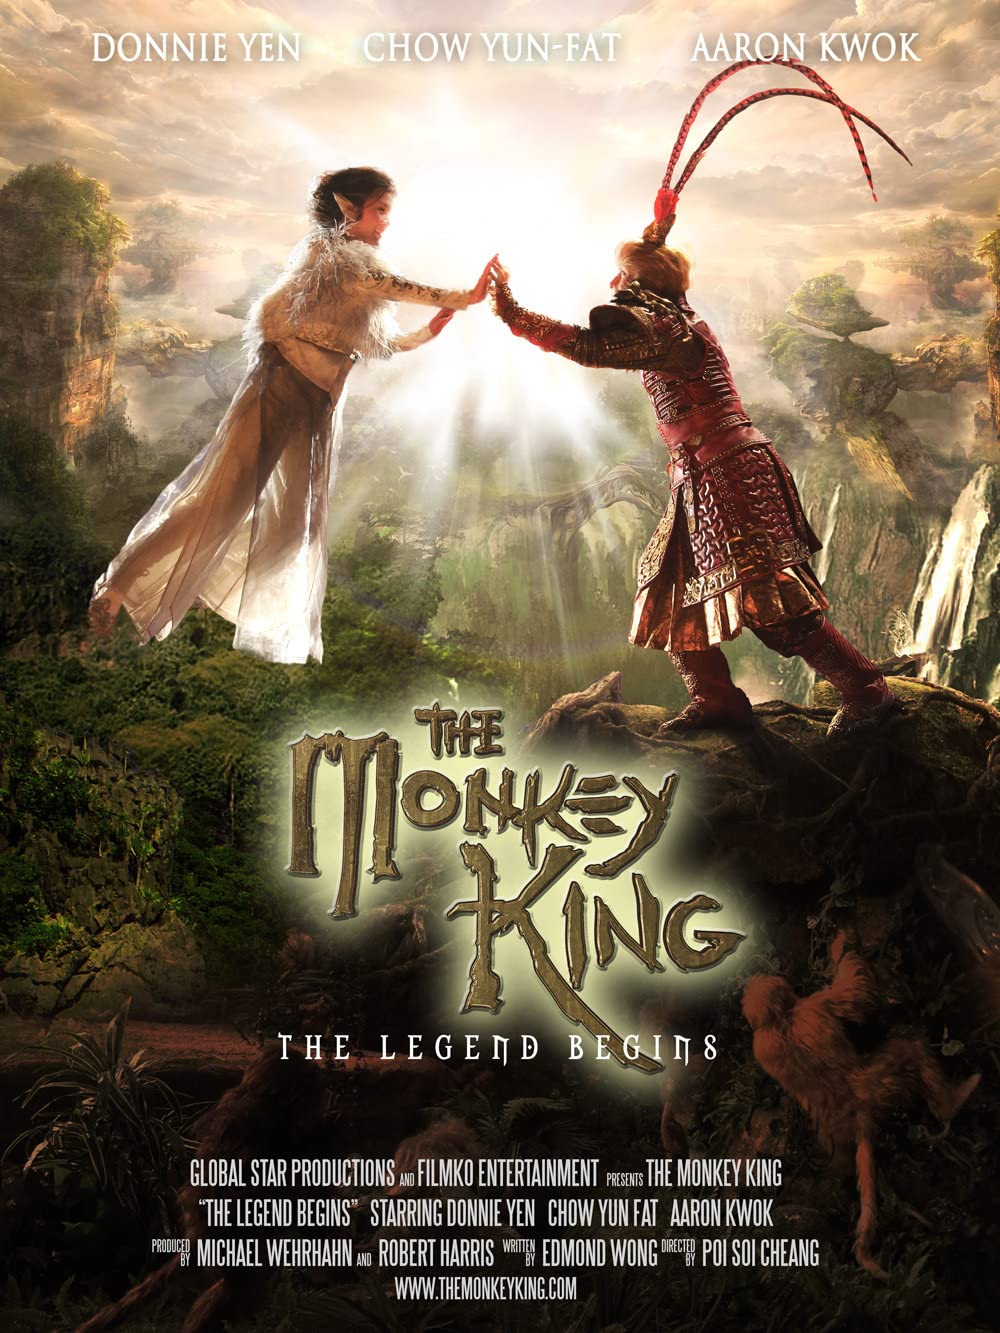 ดูหนังออนไลน์ฟรี The Monkey King The Legend Begins (2022)  ราชาลิงตำนานเริ่มต้น 2022 (ซับไทย)